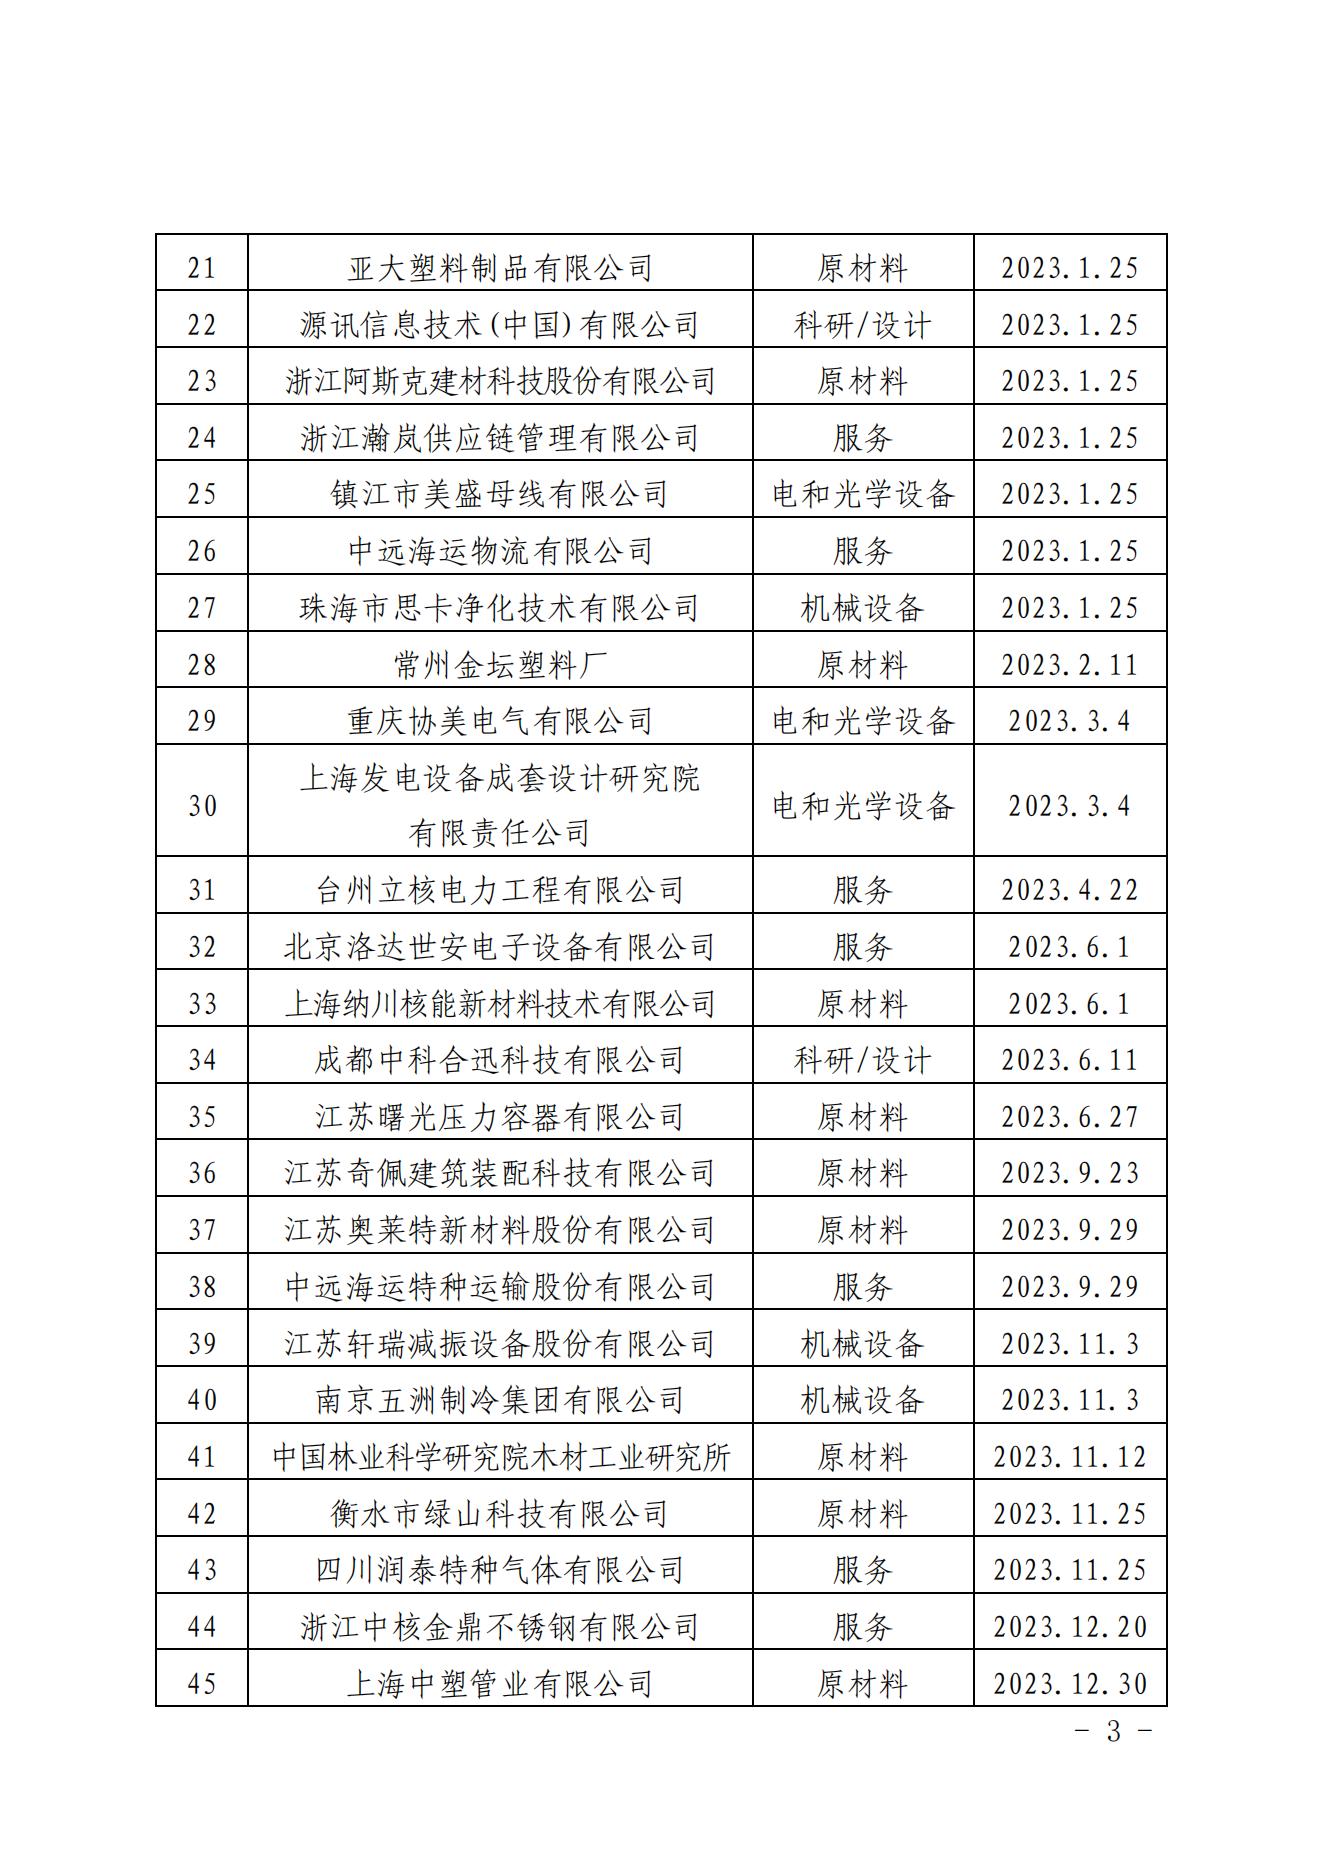 关于发布中国核能行业协会核能行业第十二批合格供应商名录的公告_02.jpg